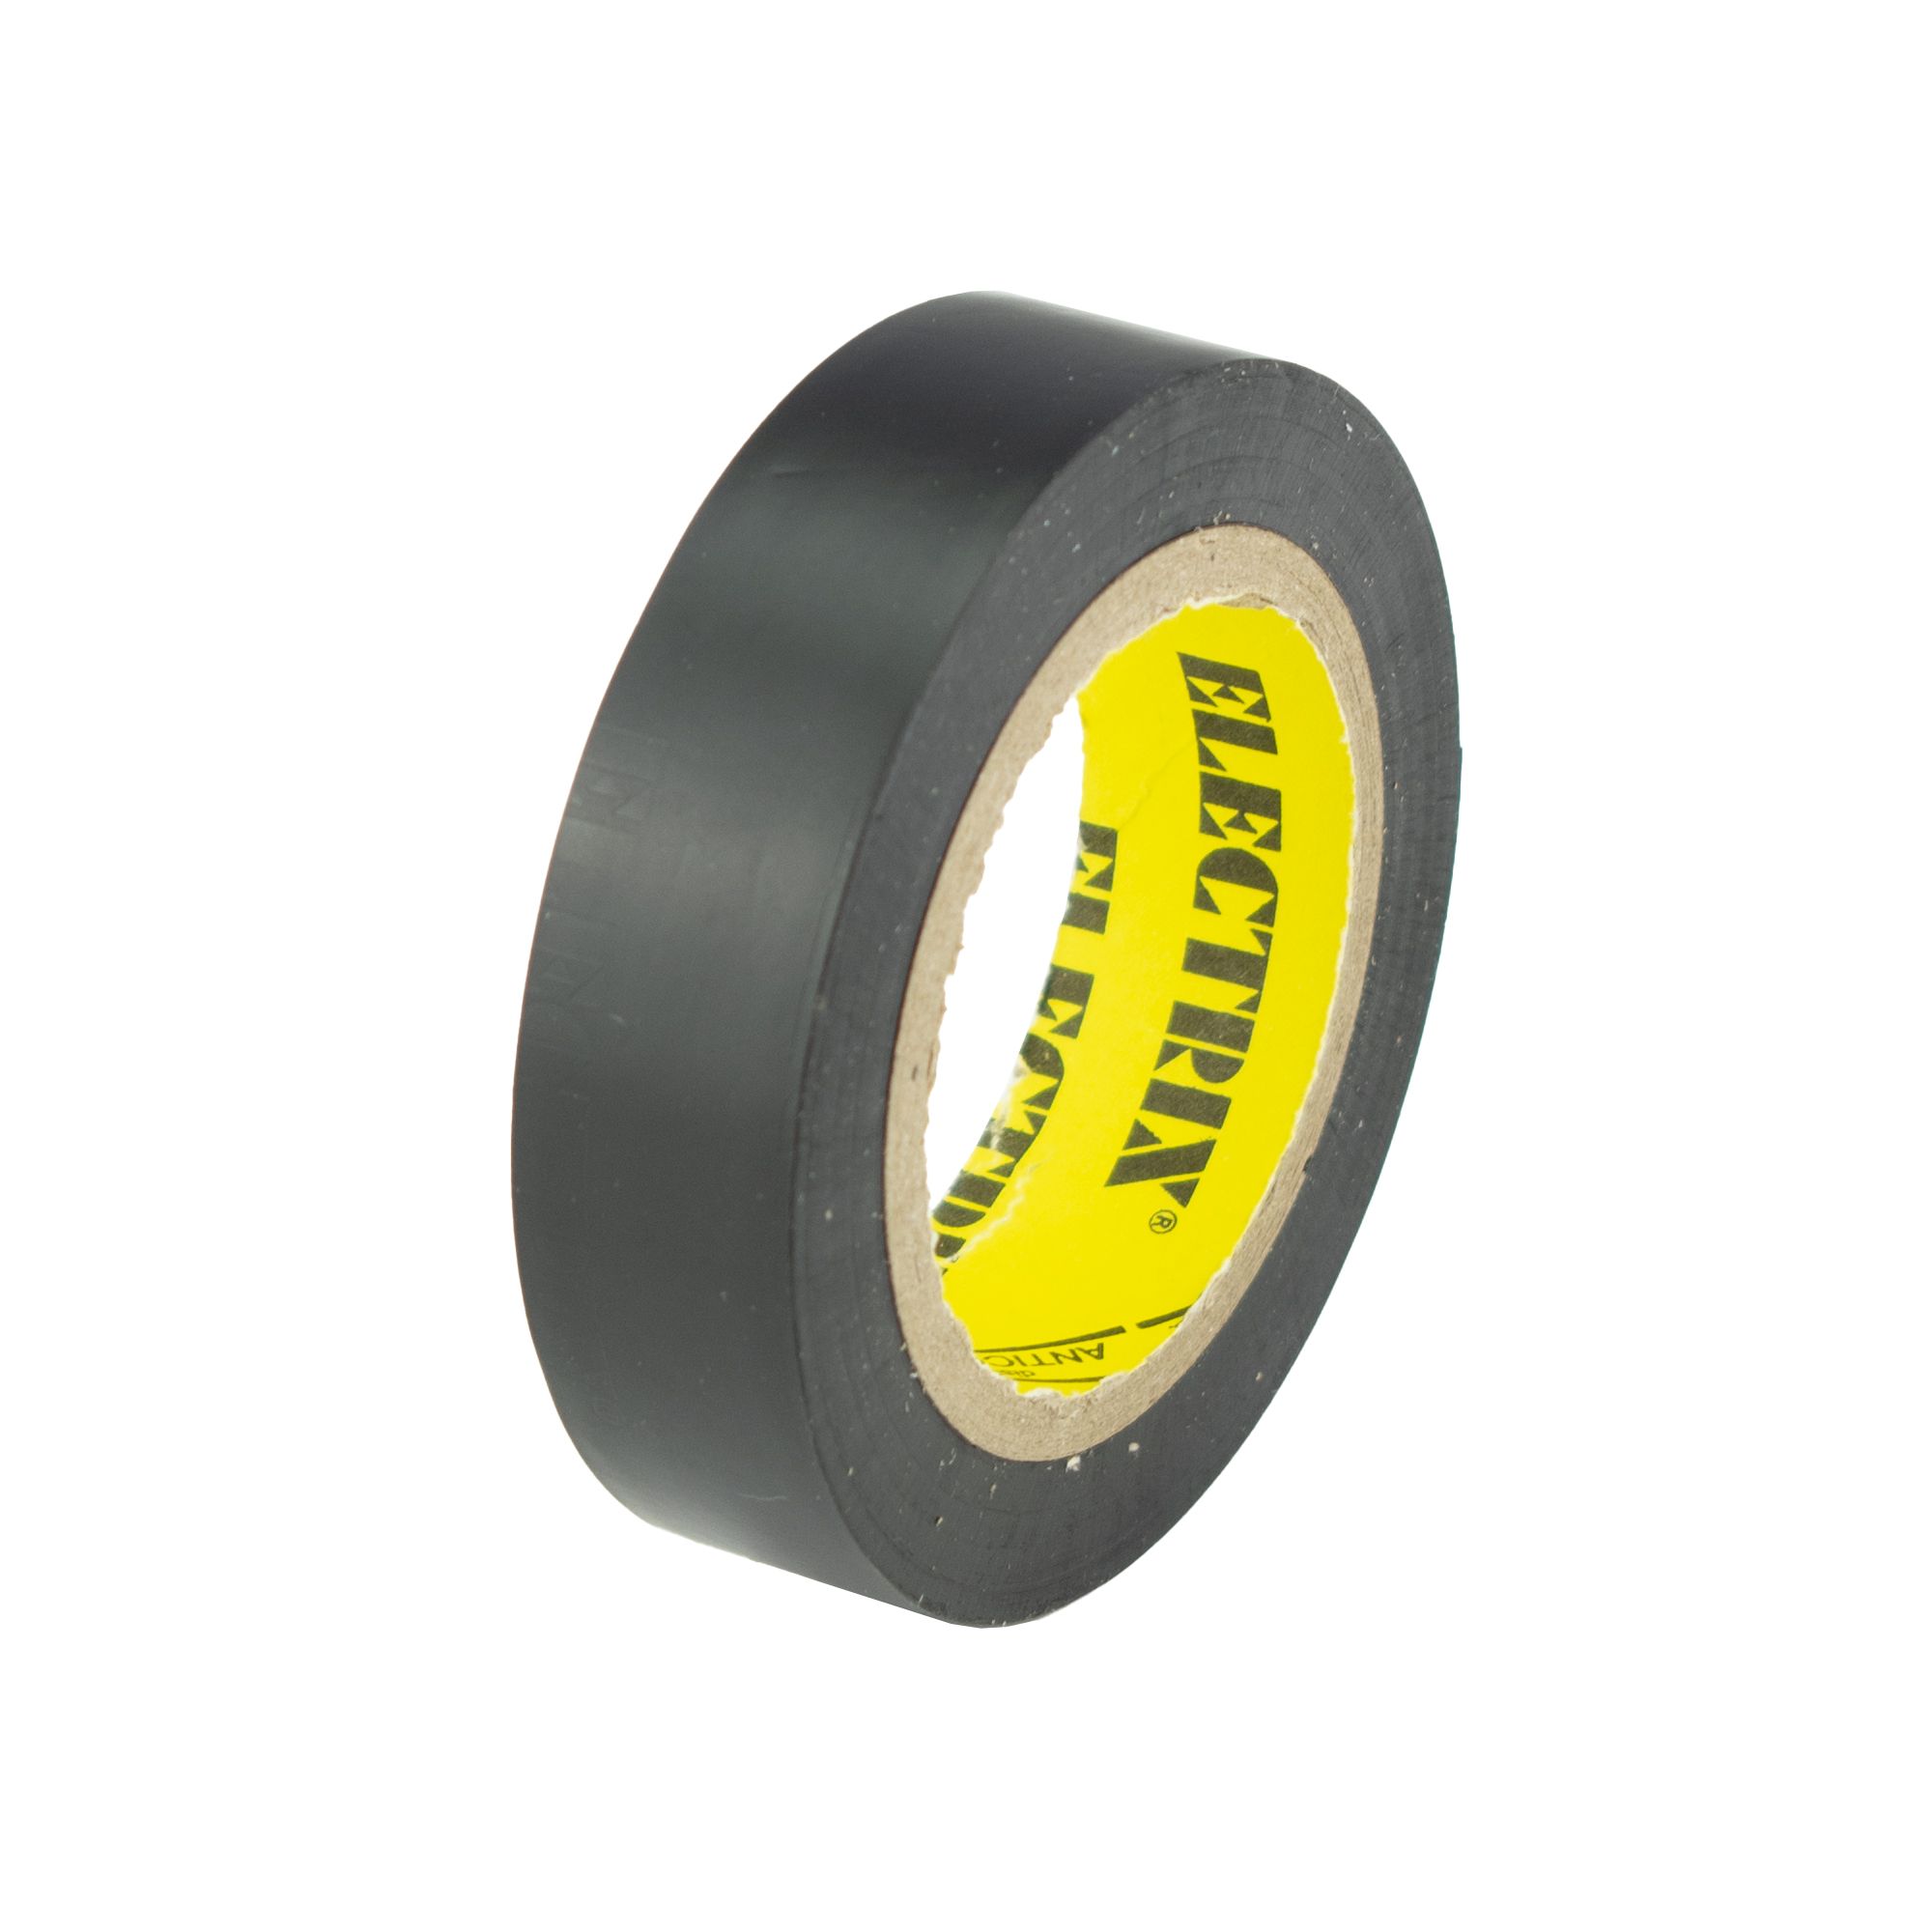 Izolační páska PVC 15mm / 10m, černá 211 0.028 Kg ŽELEZÁŽŘSTVÍ Sklad4 KB- V9510